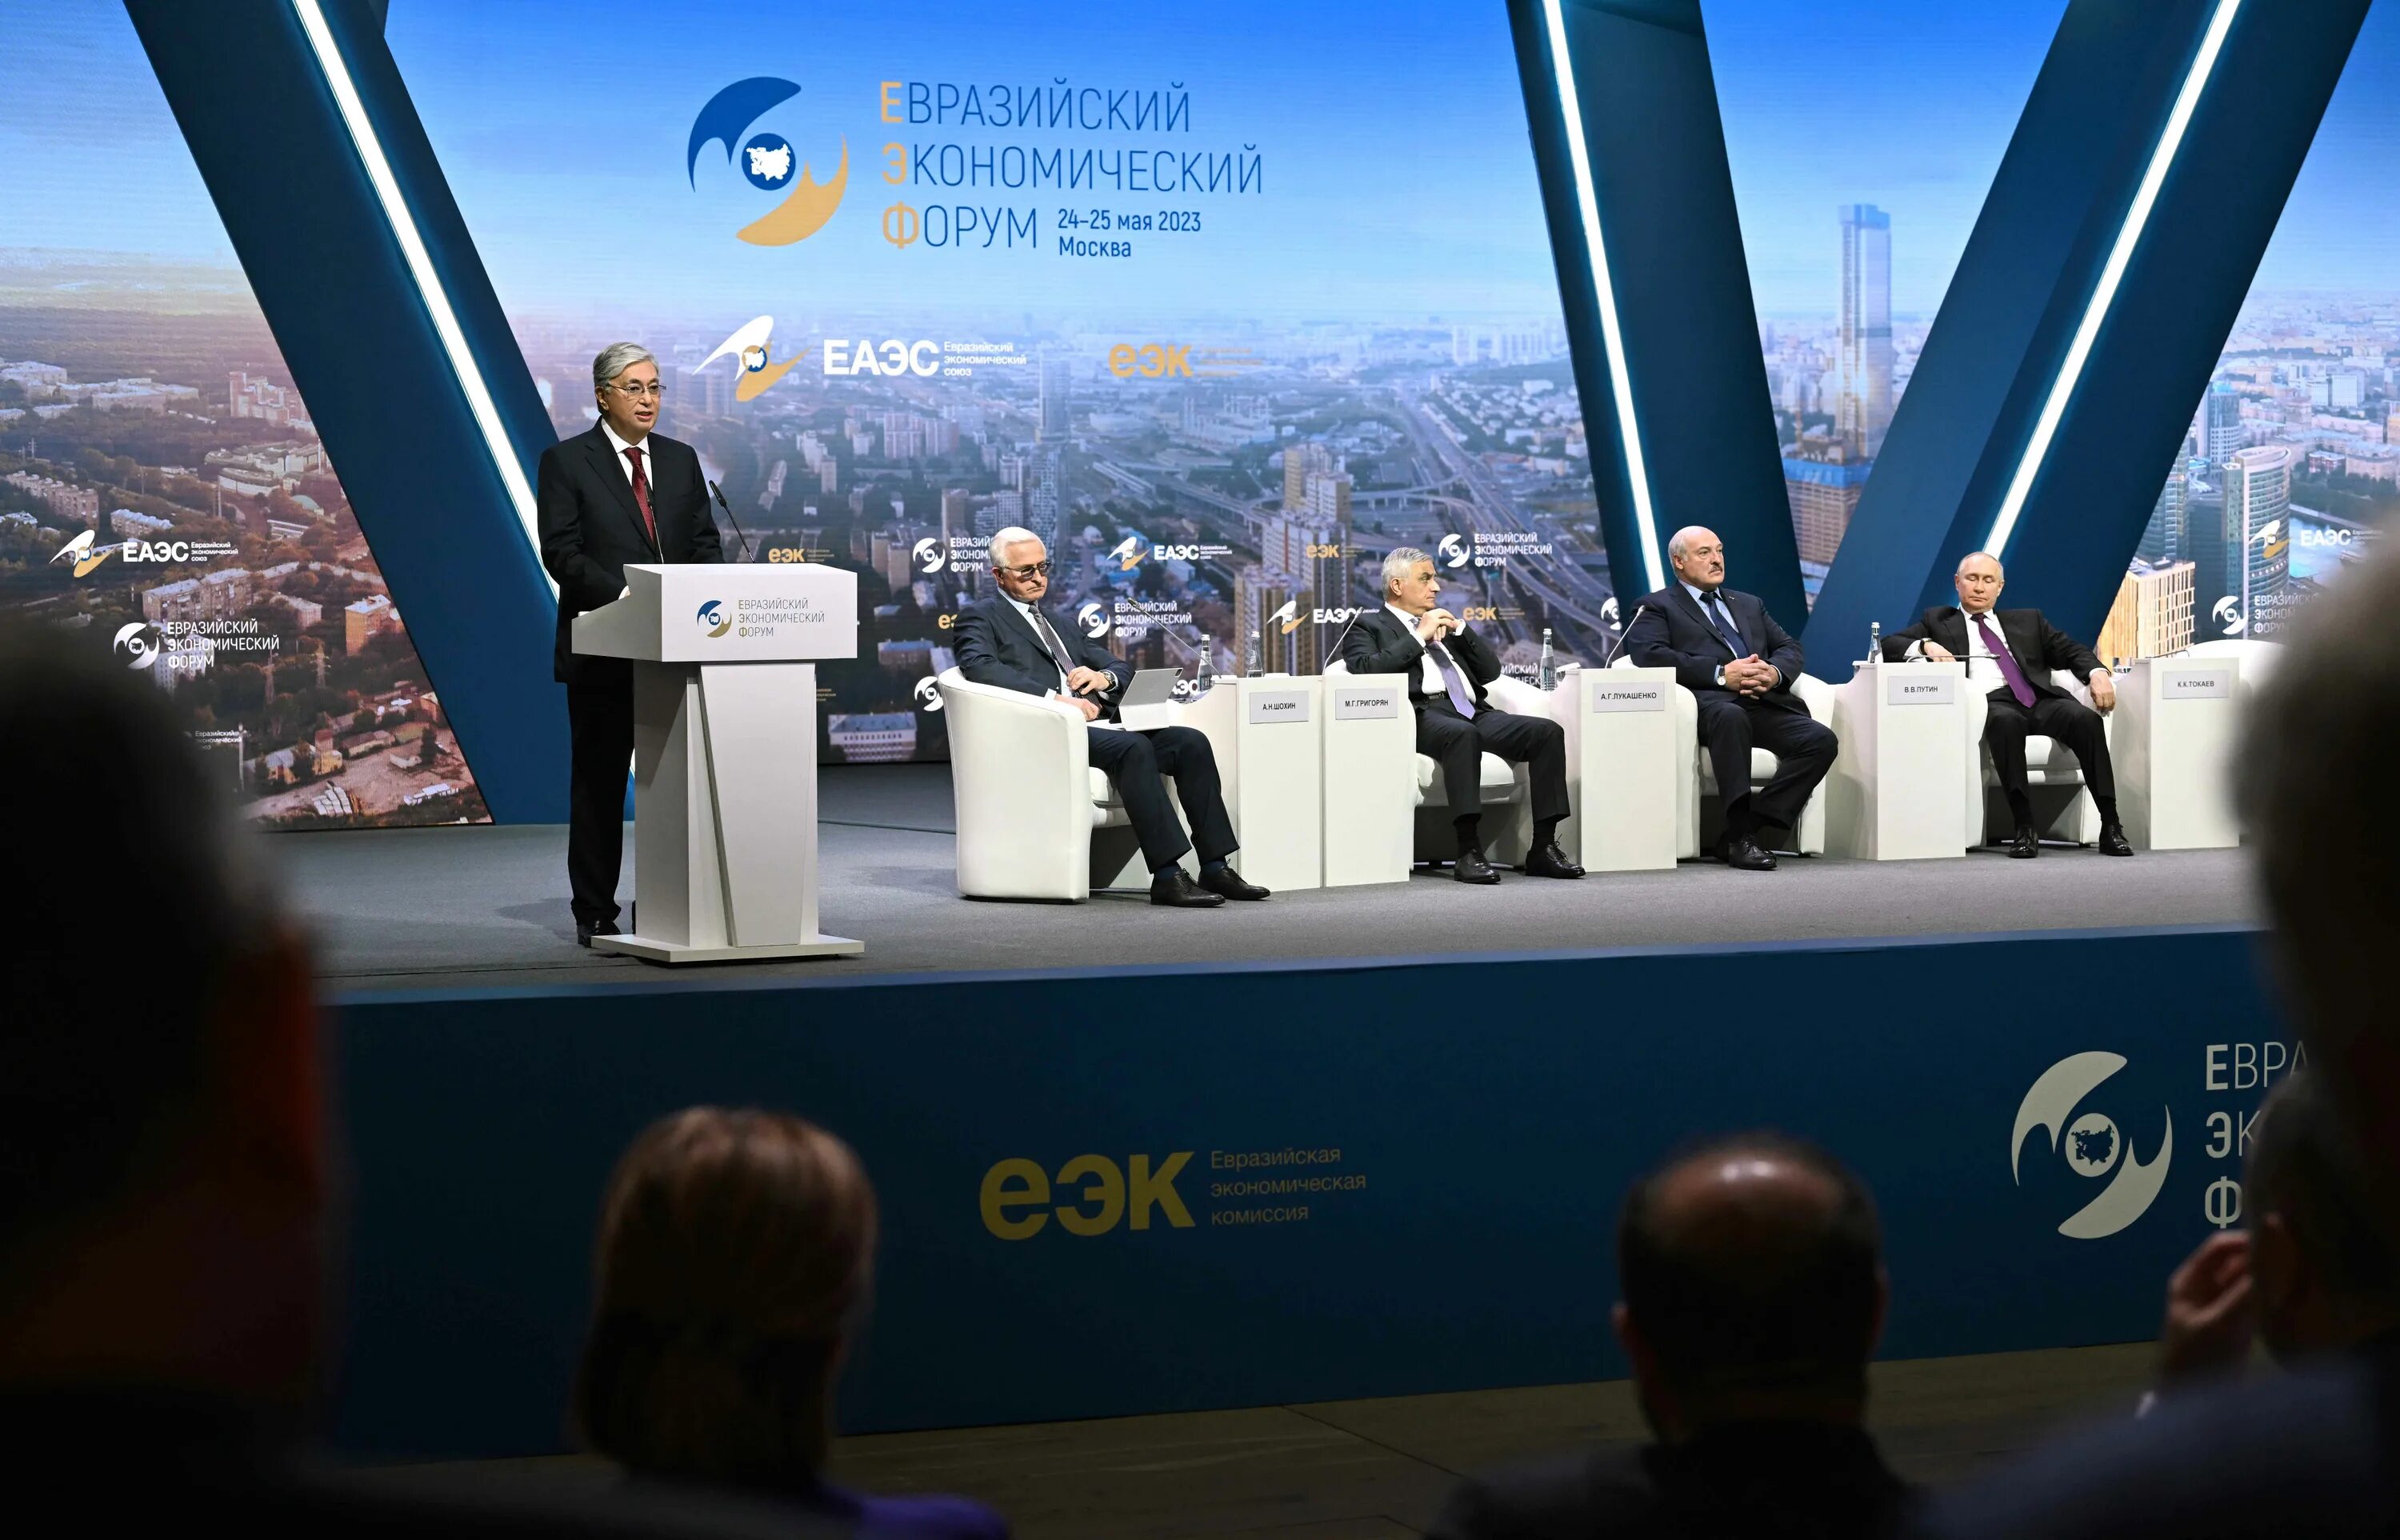 Евразийский экономический форум. Токаев 2023. Евразийский саммит. Пленарное заседание Евразийского экономического форума. Политики фото.